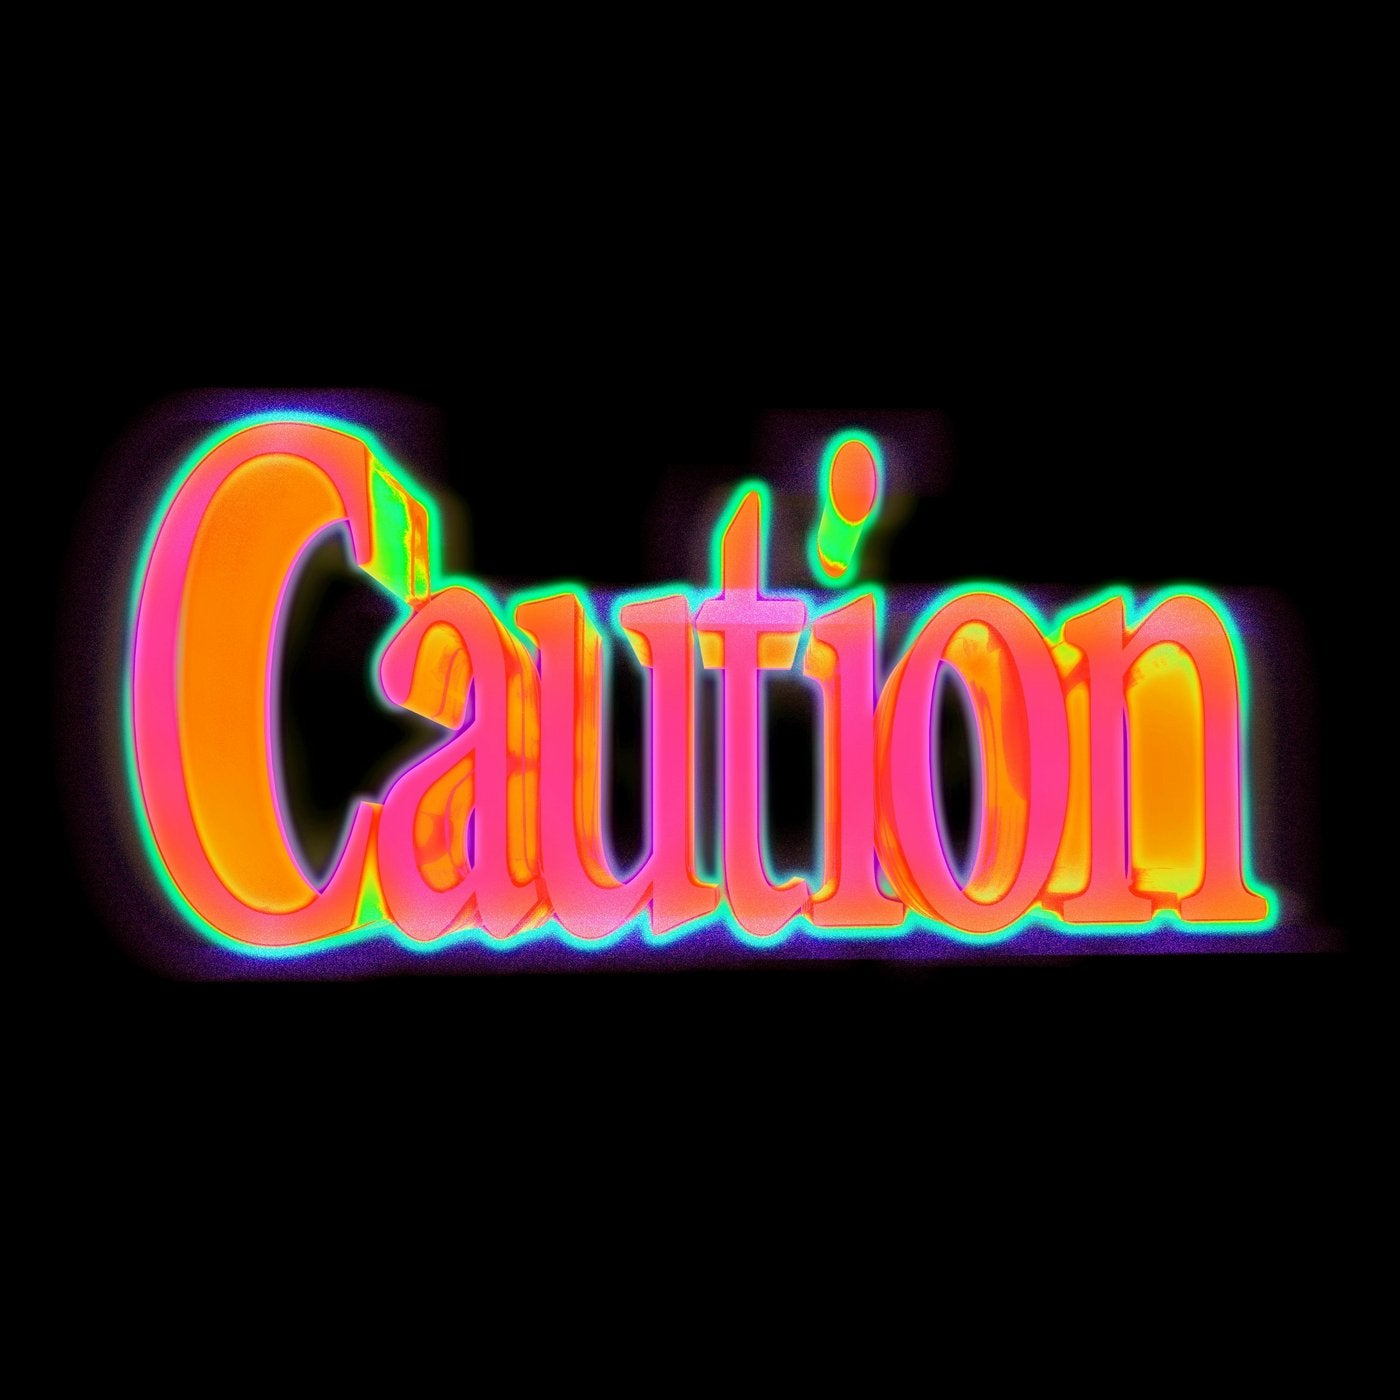 Caution (feat. Drift boy)